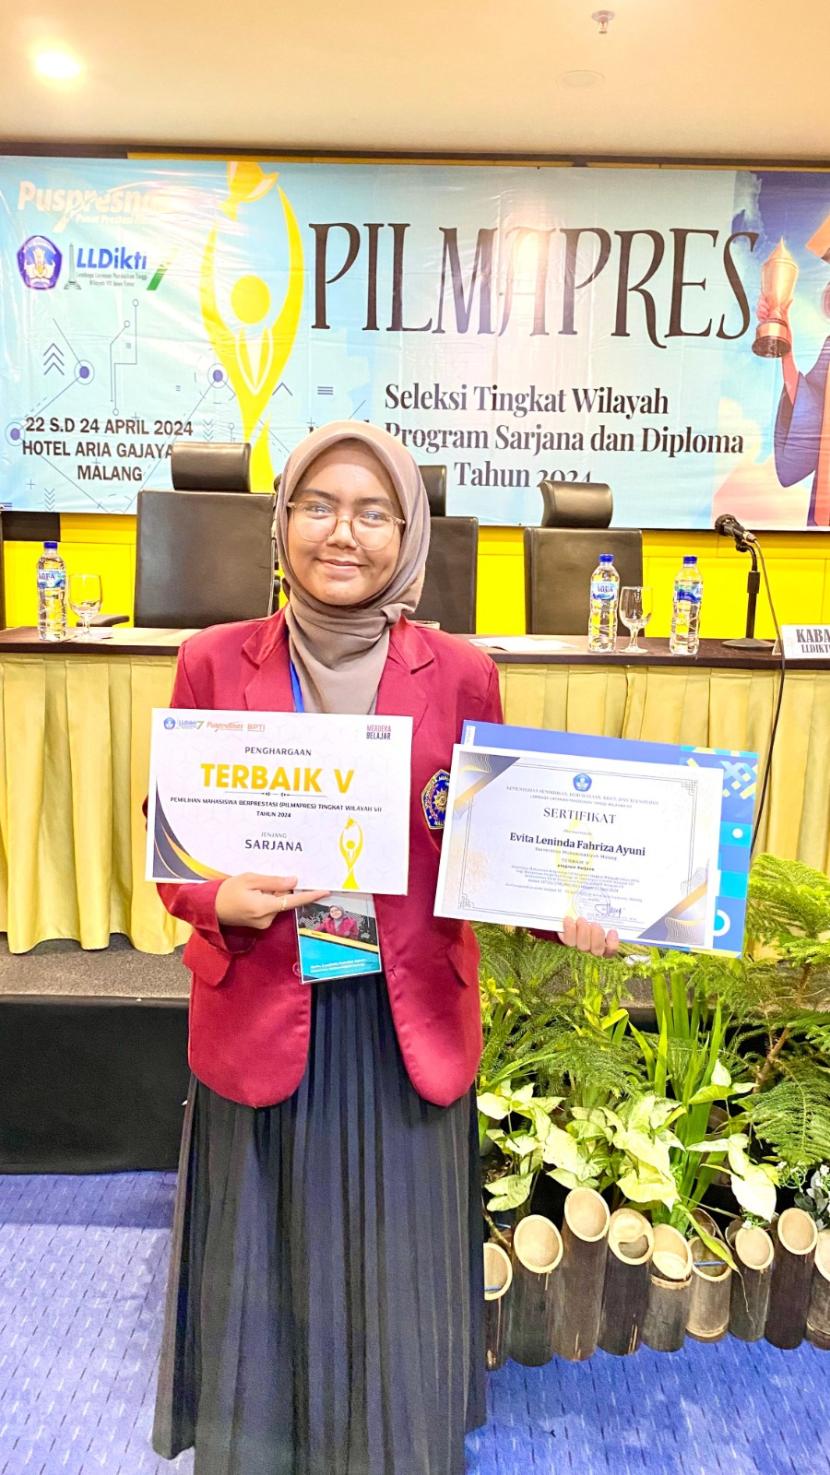 Mahasiswa Program Studi Teknik Mesin Universitas Muhammadiyah Malang (UMM), Evita Leninda Fahriza Ayuni, yang sukses mendapatkan predikat terbaik lima pada ajang Pemilihan Mahasiswa Berprestasi (Pilmapres) 2024 LLDikti wilayah 7 Jawa Timur pada 24 April 2024. 